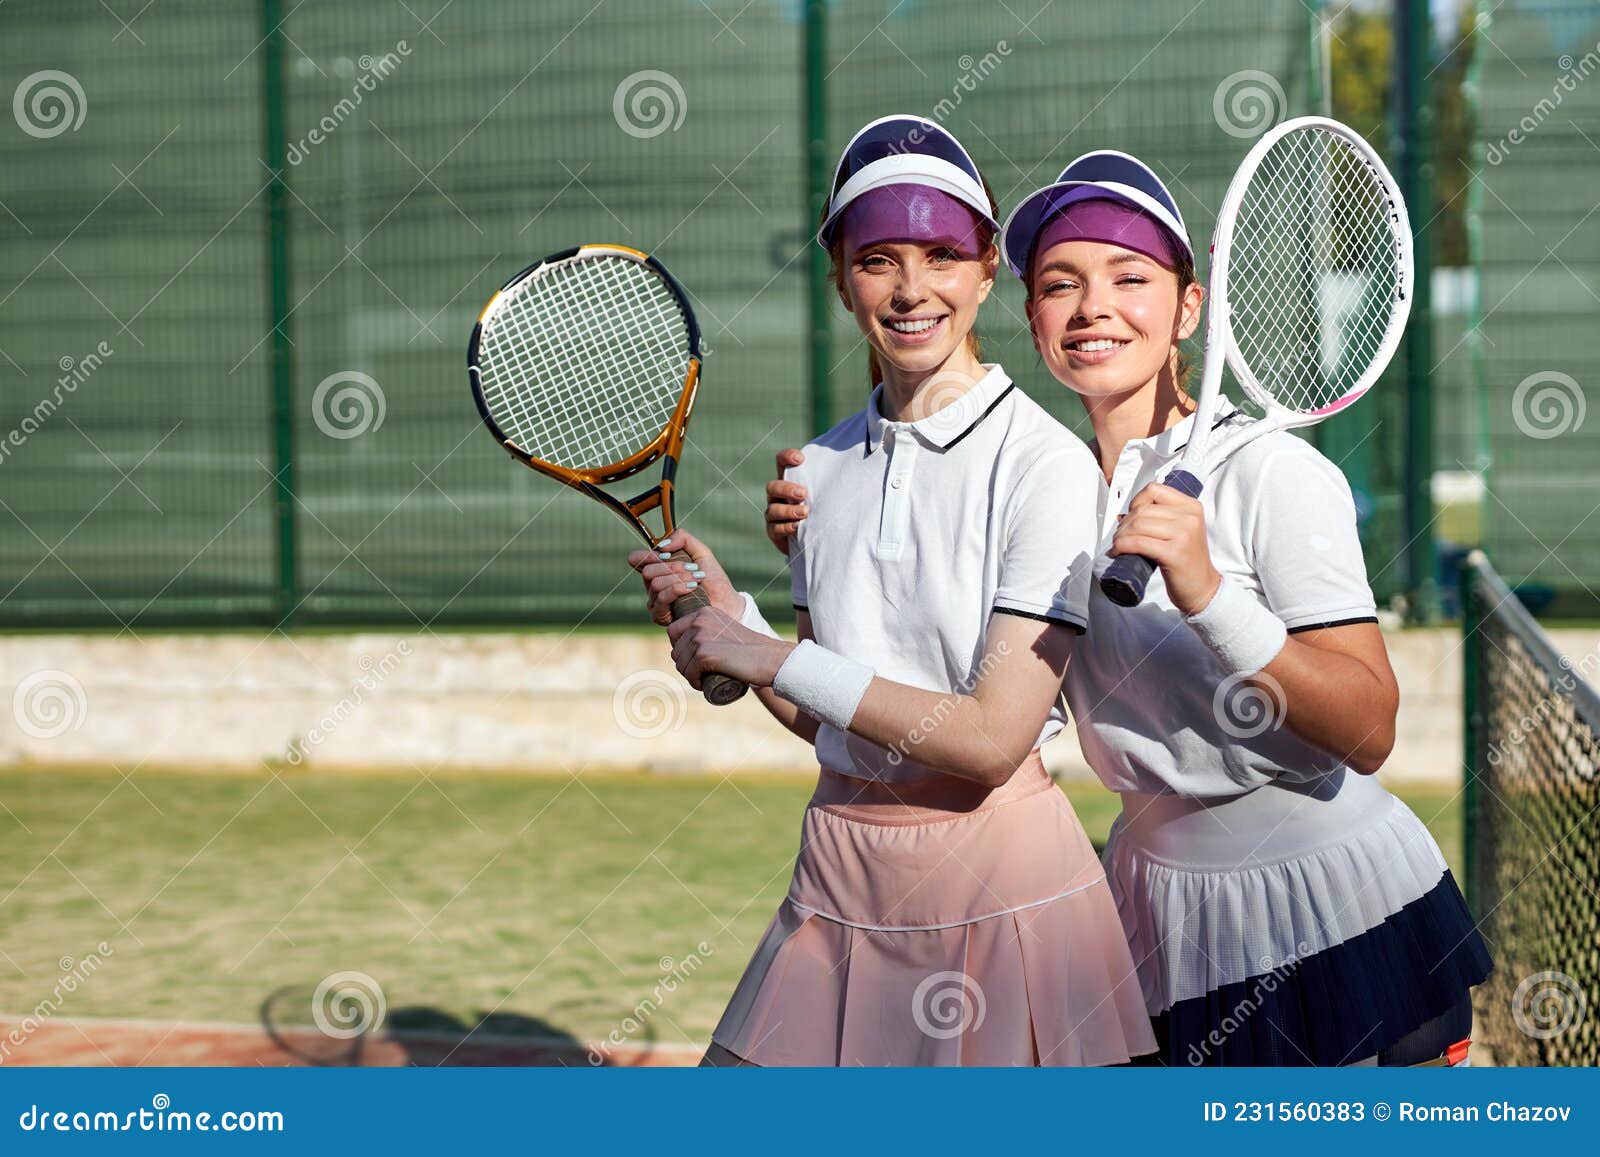 Twee Opgewonden Caucasiaanse Vrouwen in De Rechtbank. Vrouwen in Met Tennisracket Stock Afbeelding - of amerikaans, genieten: 231560383